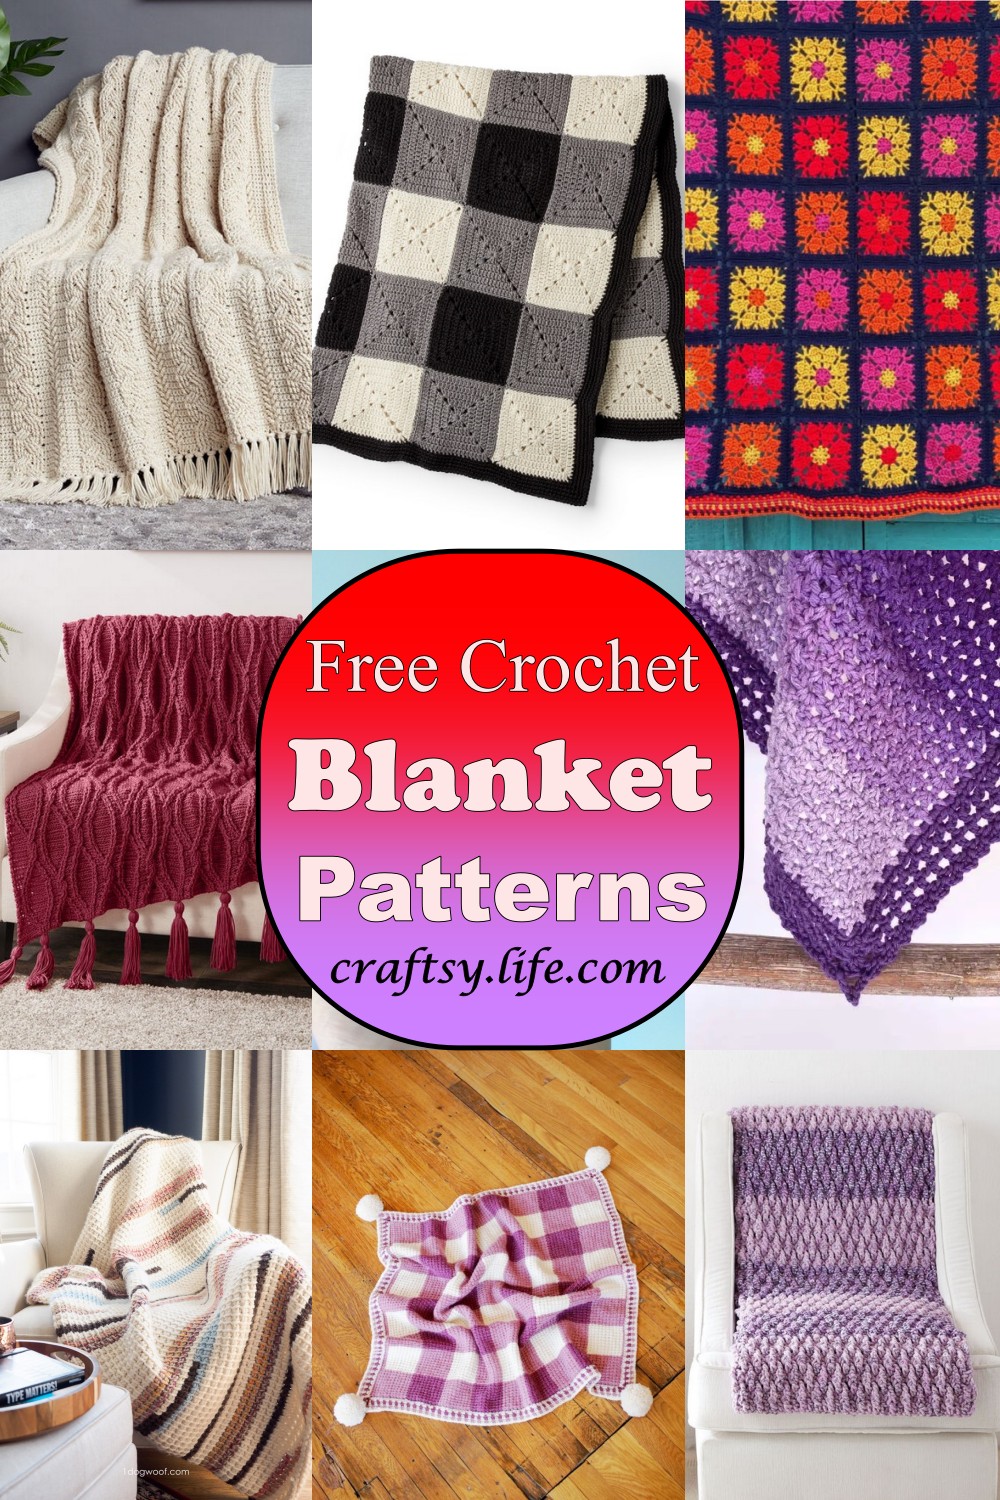 Free Crochet Blanket Patterns